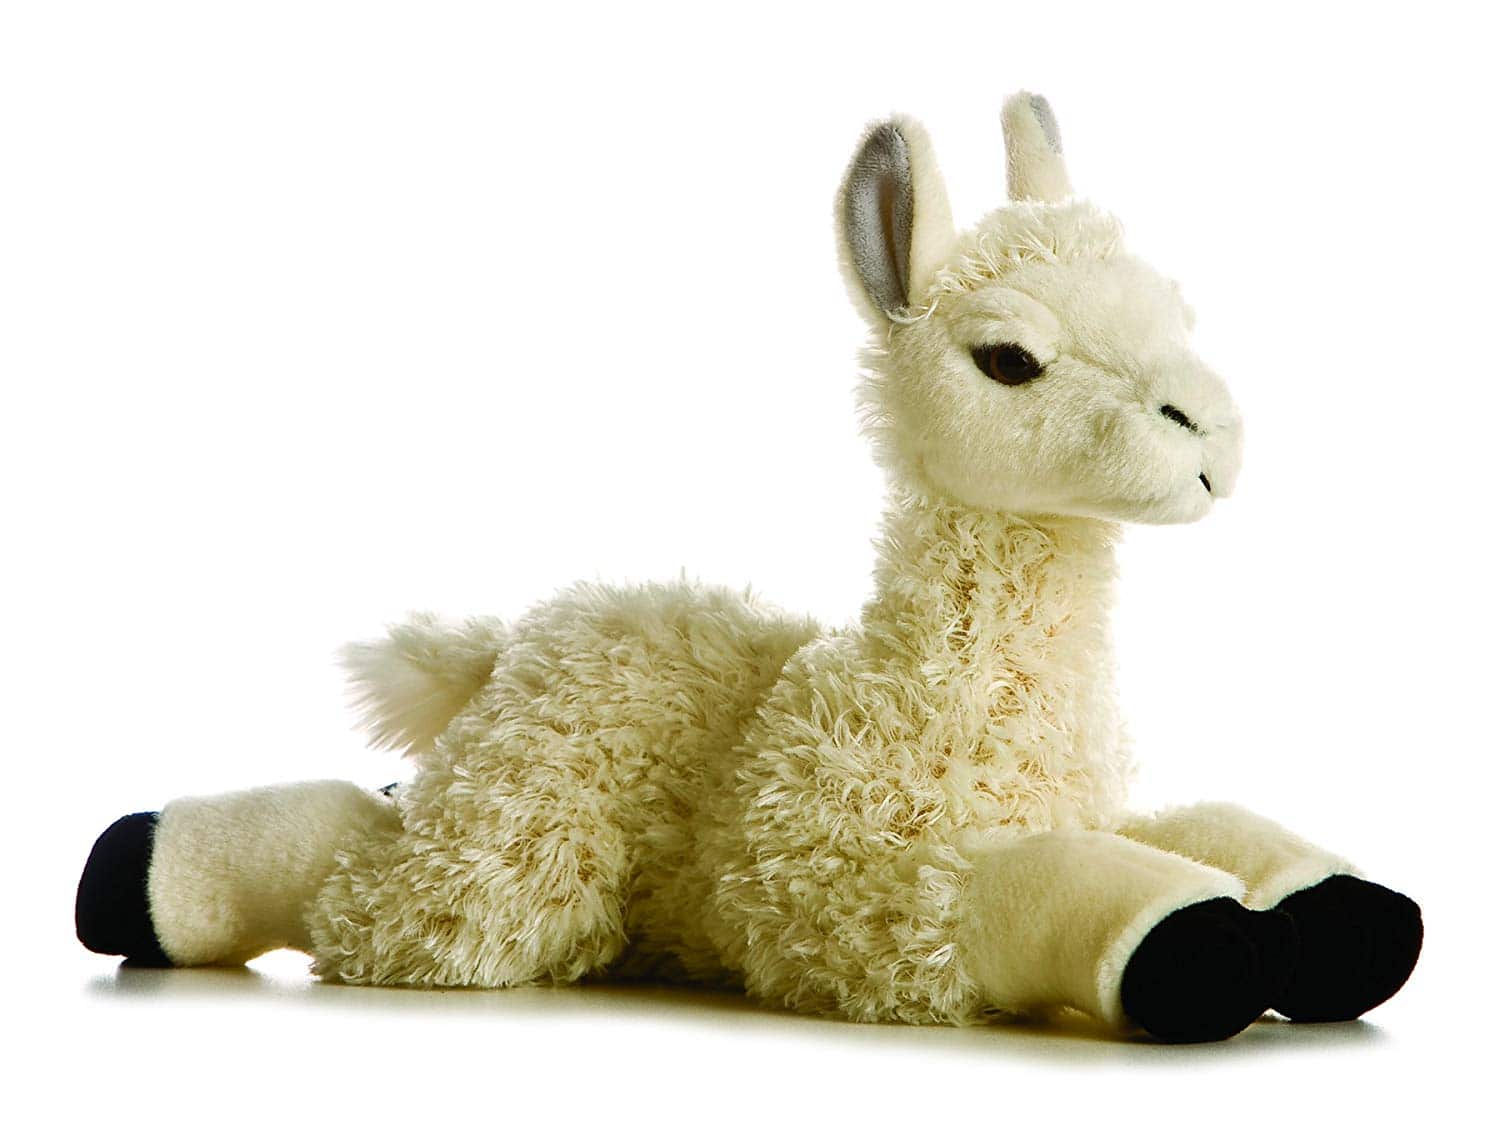 Best Llama Gifts 2022: Stuffed Animal Llama